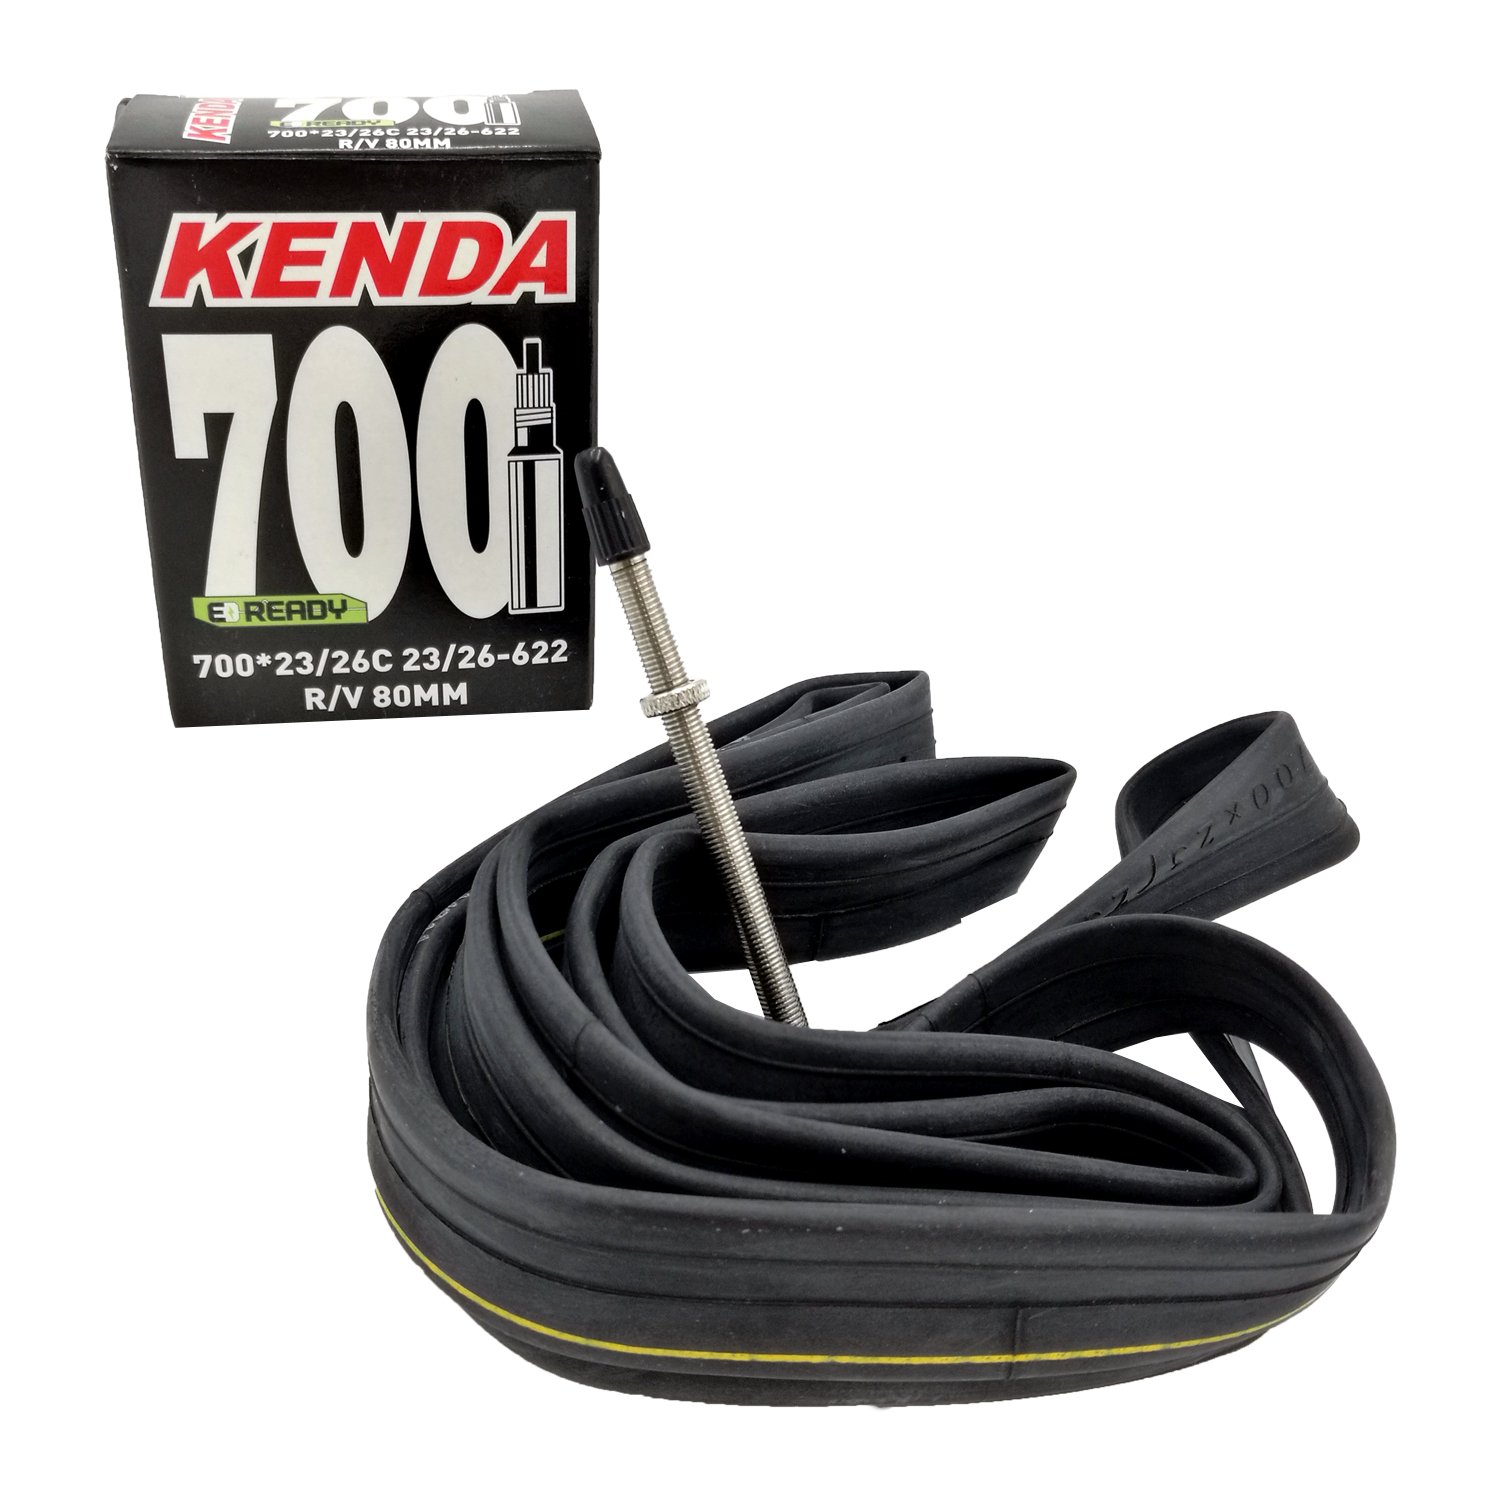 Камера велосипедная Kenda, 700 x 23/26, 23/26-622, F/V, 80 mm, 516280 купить на ЖДБЗ.ру - фотография № 1